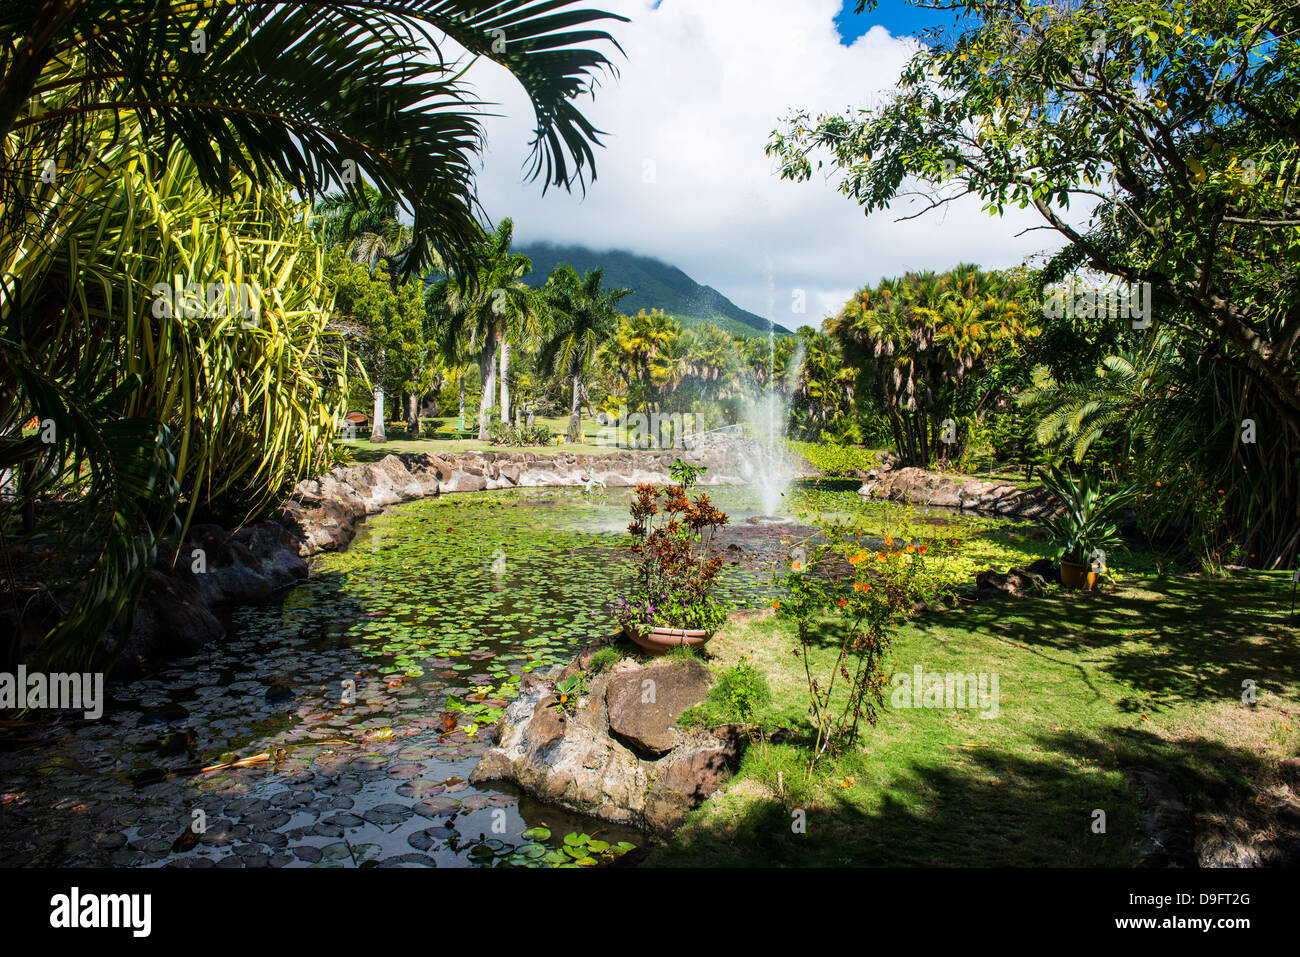 Jardins botaniques sur l'île de Nevis, Saint Kitts et Nevis, Iles sous le vent, Antilles, Caraïbes Banque D'Images